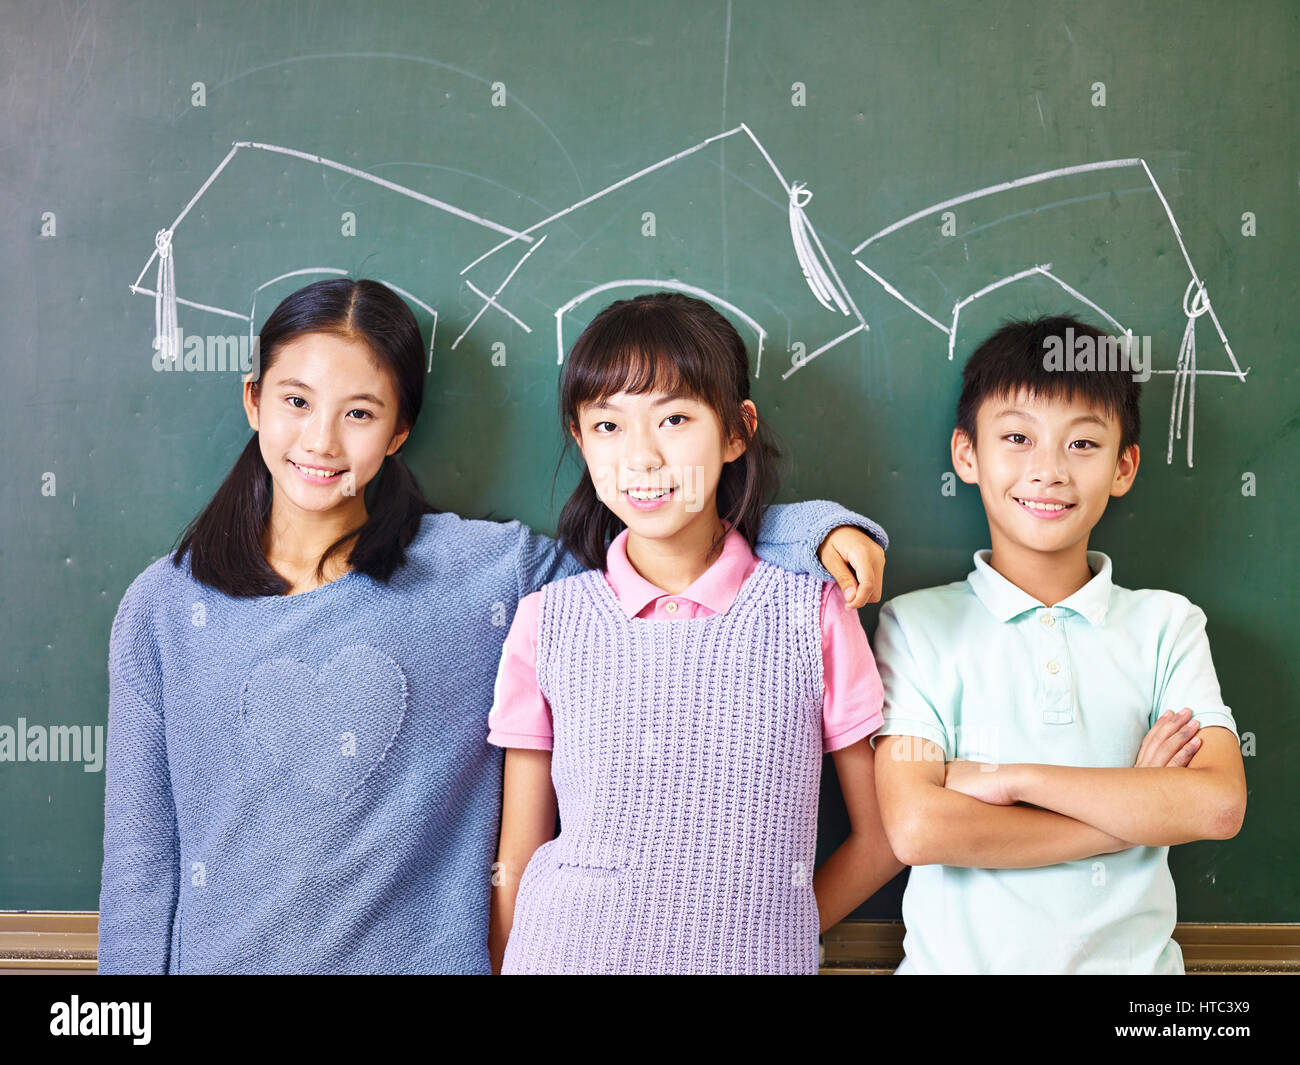 Trois enfants de l'école primaire asiatique debout sous la craie-tirées des chapeaux de doctorat in front of blackboard. Banque D'Images